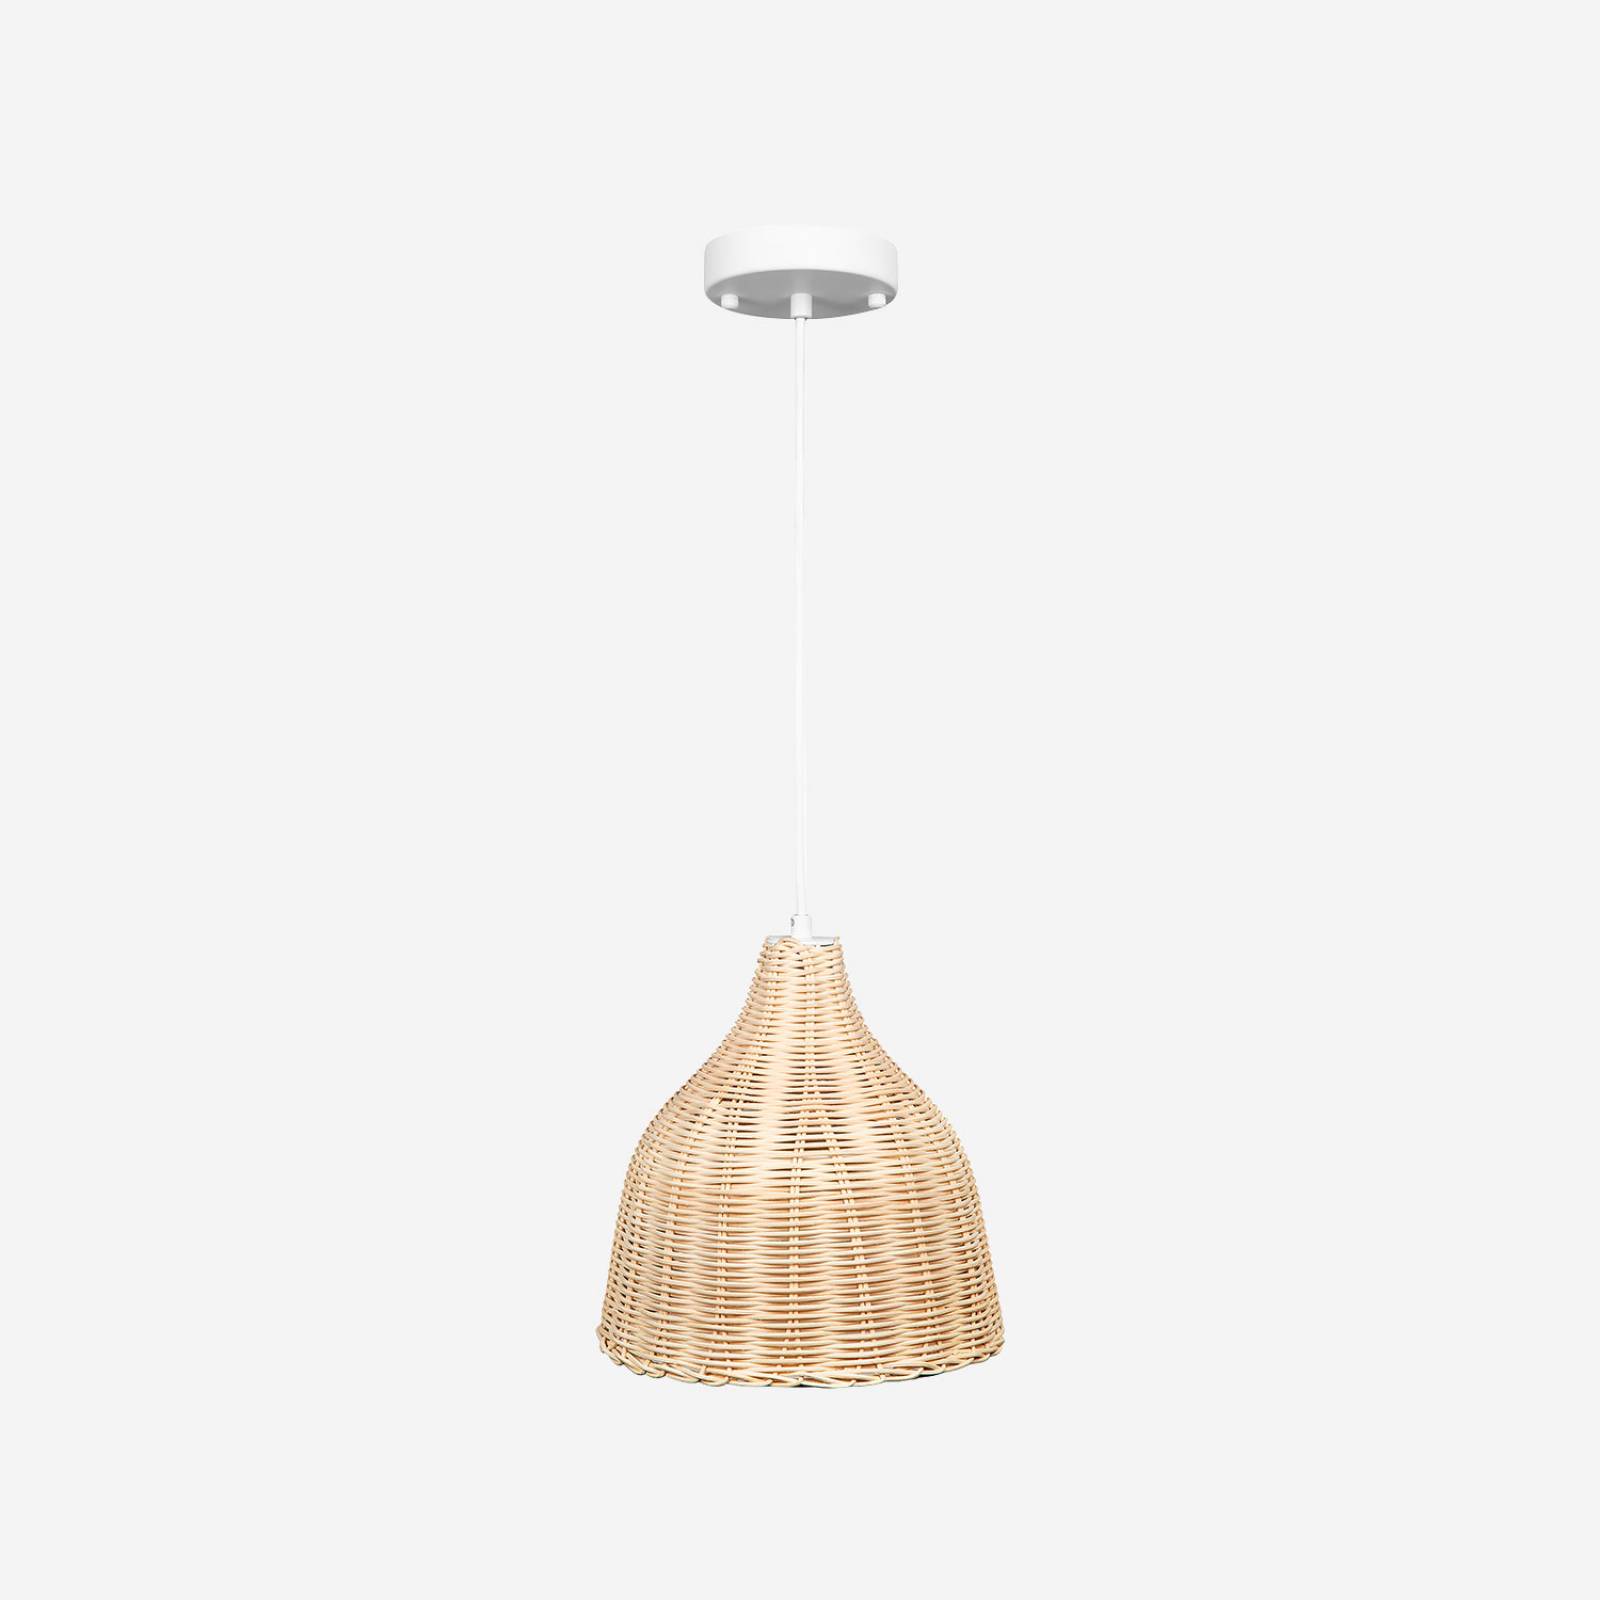 Lámpara de bambú colgante, estilo rustico, mimbre, ideal para salas y restaurantes, luz cálida DL-2404.MB